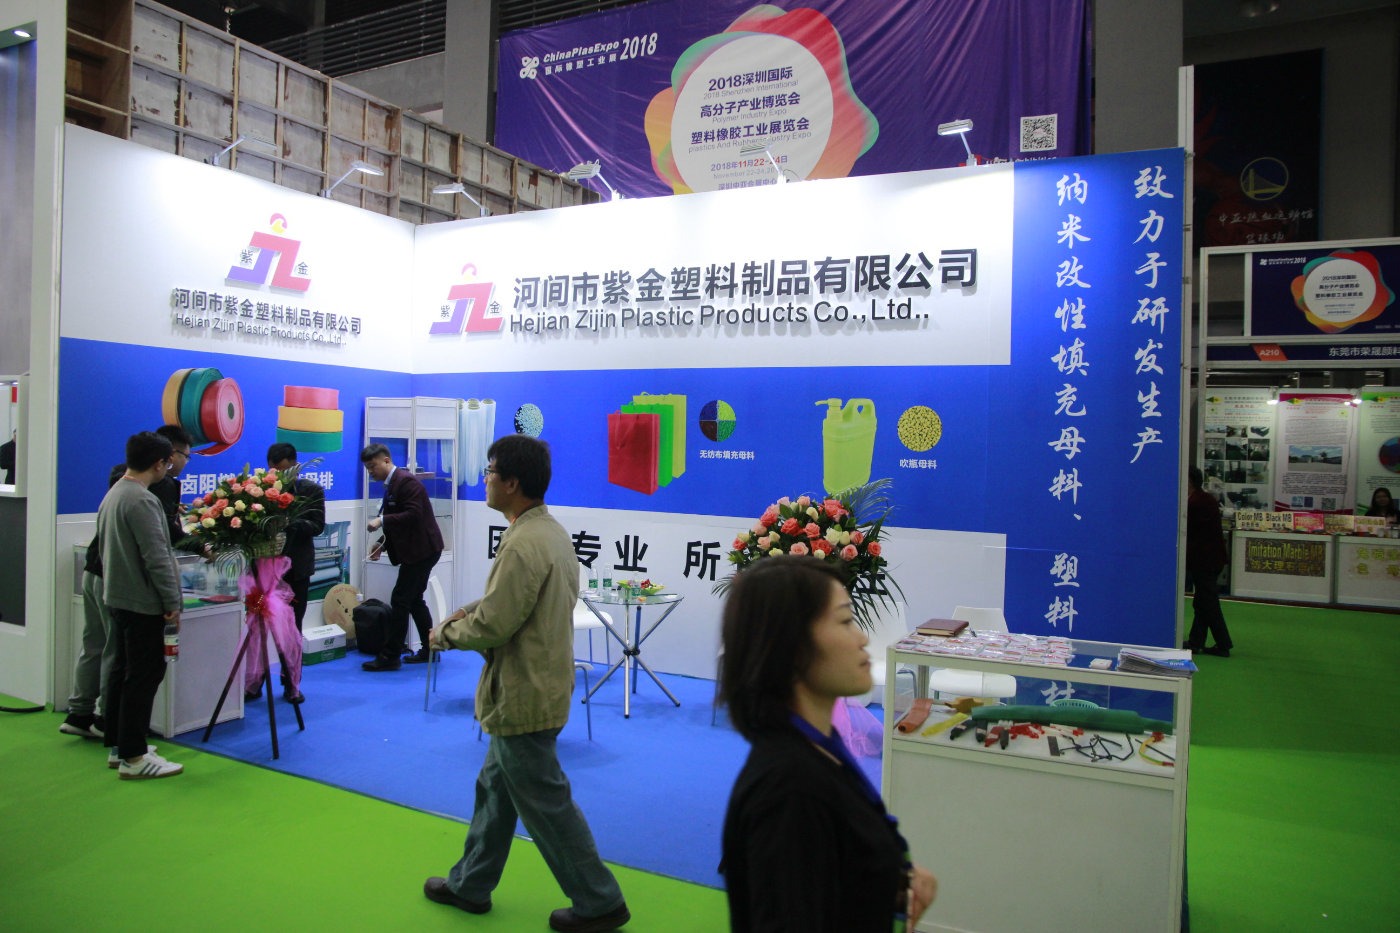 2018国际橡胶工业展在中亚会展中心1号馆举行